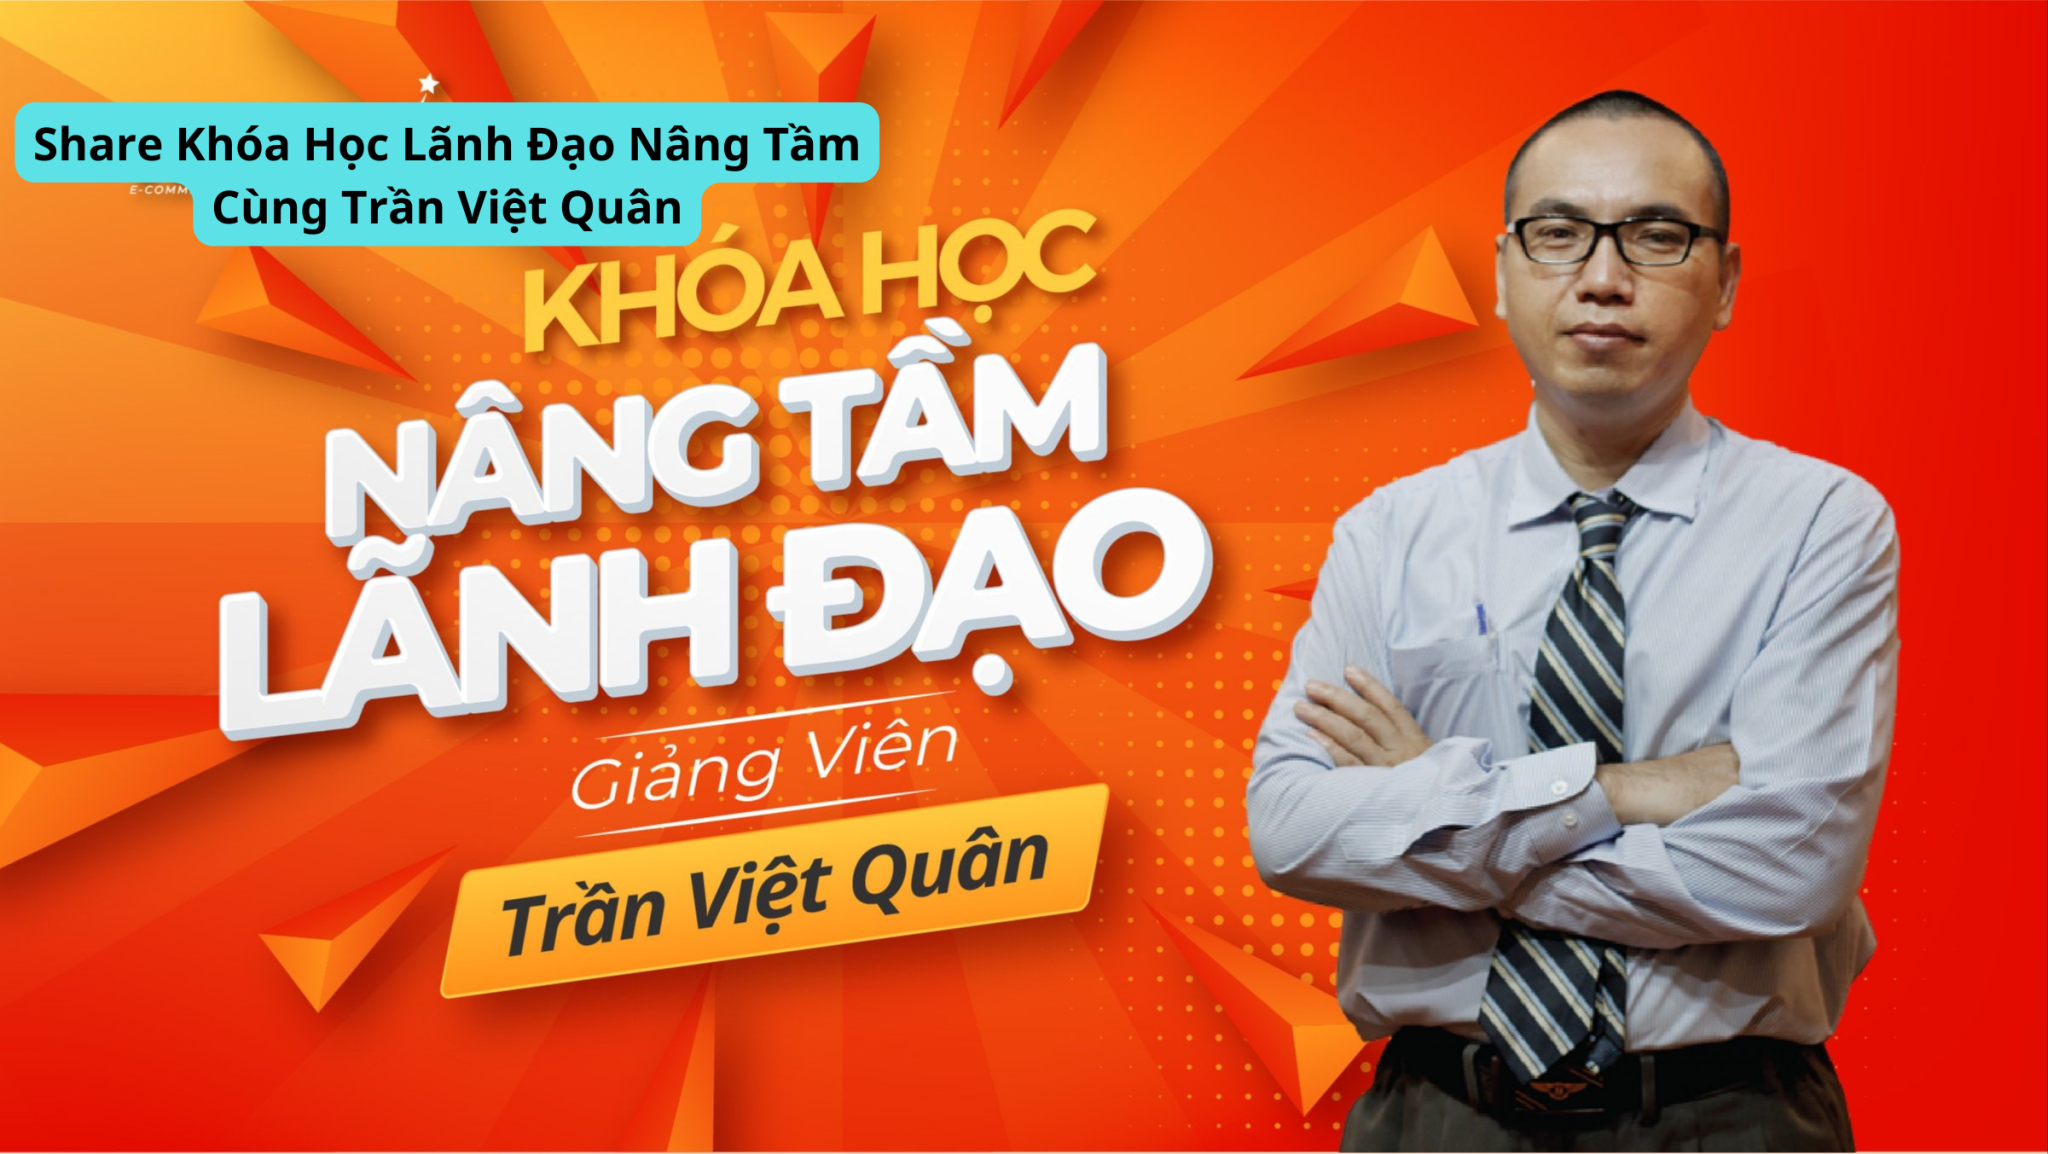 Share Khóa Học Lãnh Đạo Nâng Tầm Cùng Trần Việt Quân